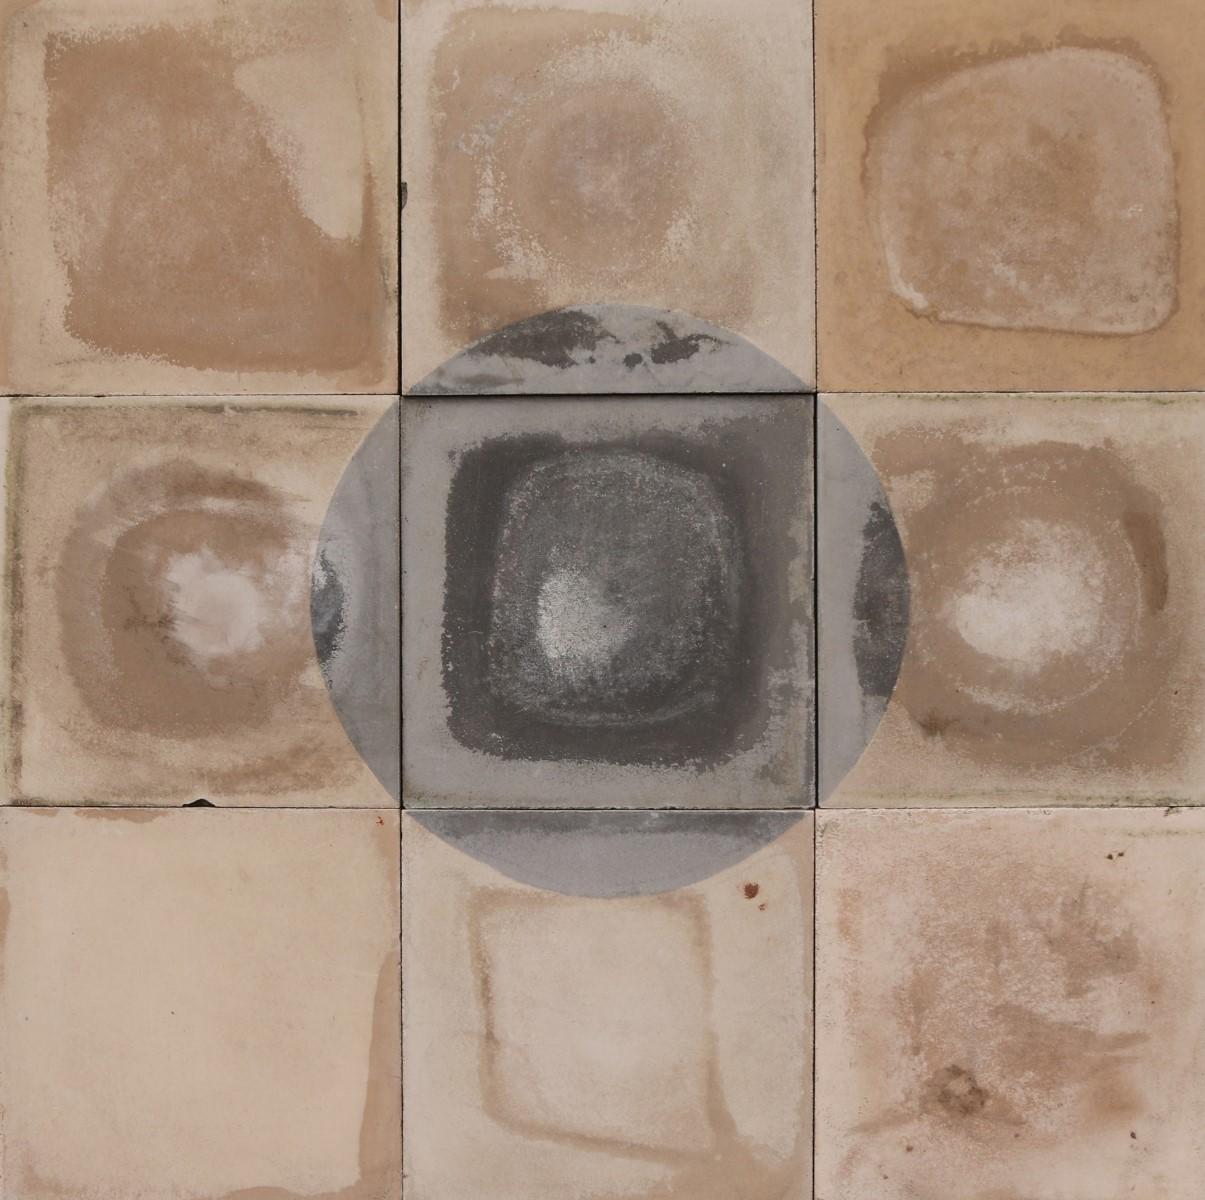 Ein Stapel von 37 wiederverwendeten Zementfliesen mit einem schwarz-weißen Kreismuster. Diese Fliesen bedecken 1,4 m2 oder 15 ft2. Geeignet für Wand und Boden.

Die 37 Steine bilden 4 vollständige Kreismuster (1 im Hauptbild).

Verwitterte